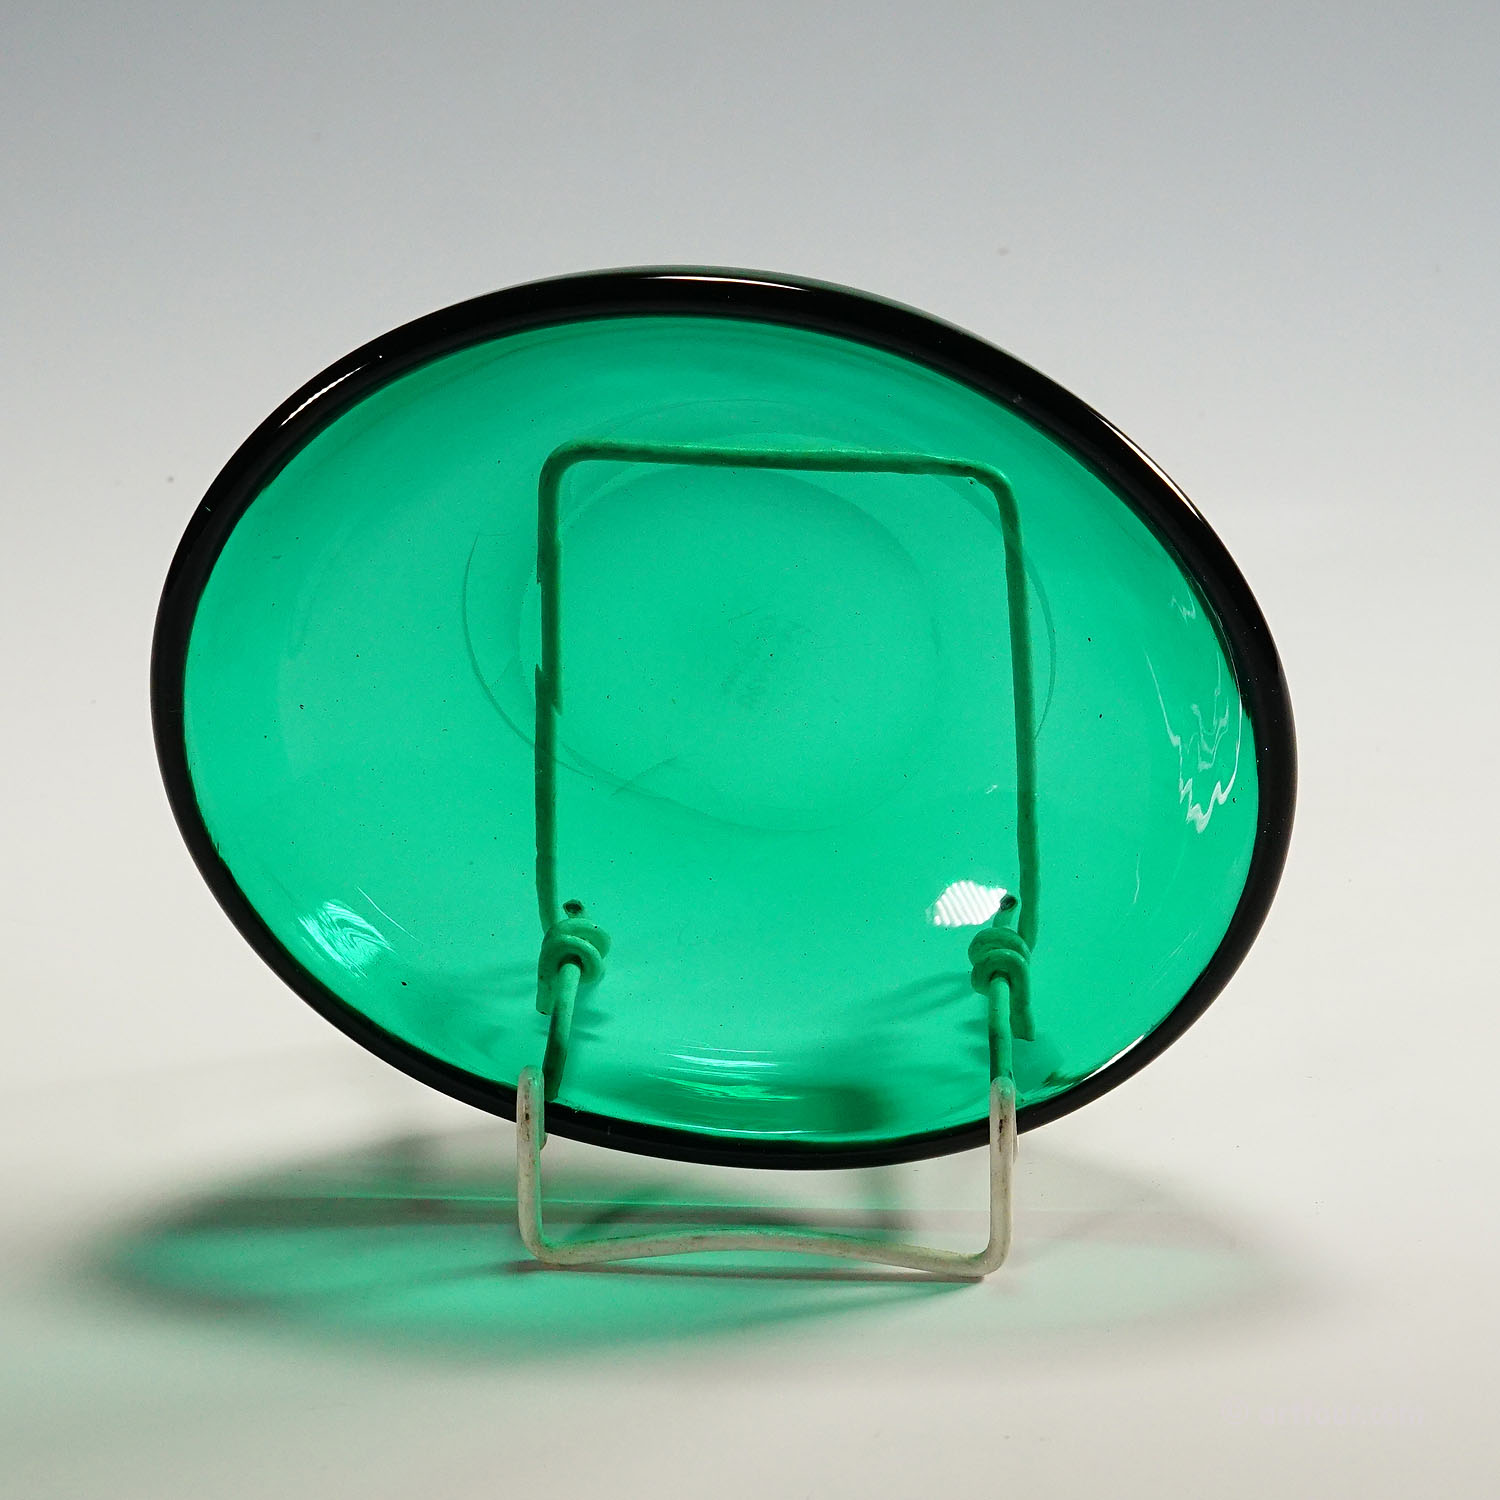 Small Oval Dish in Green Glass, Venini Murano ca. 1930s